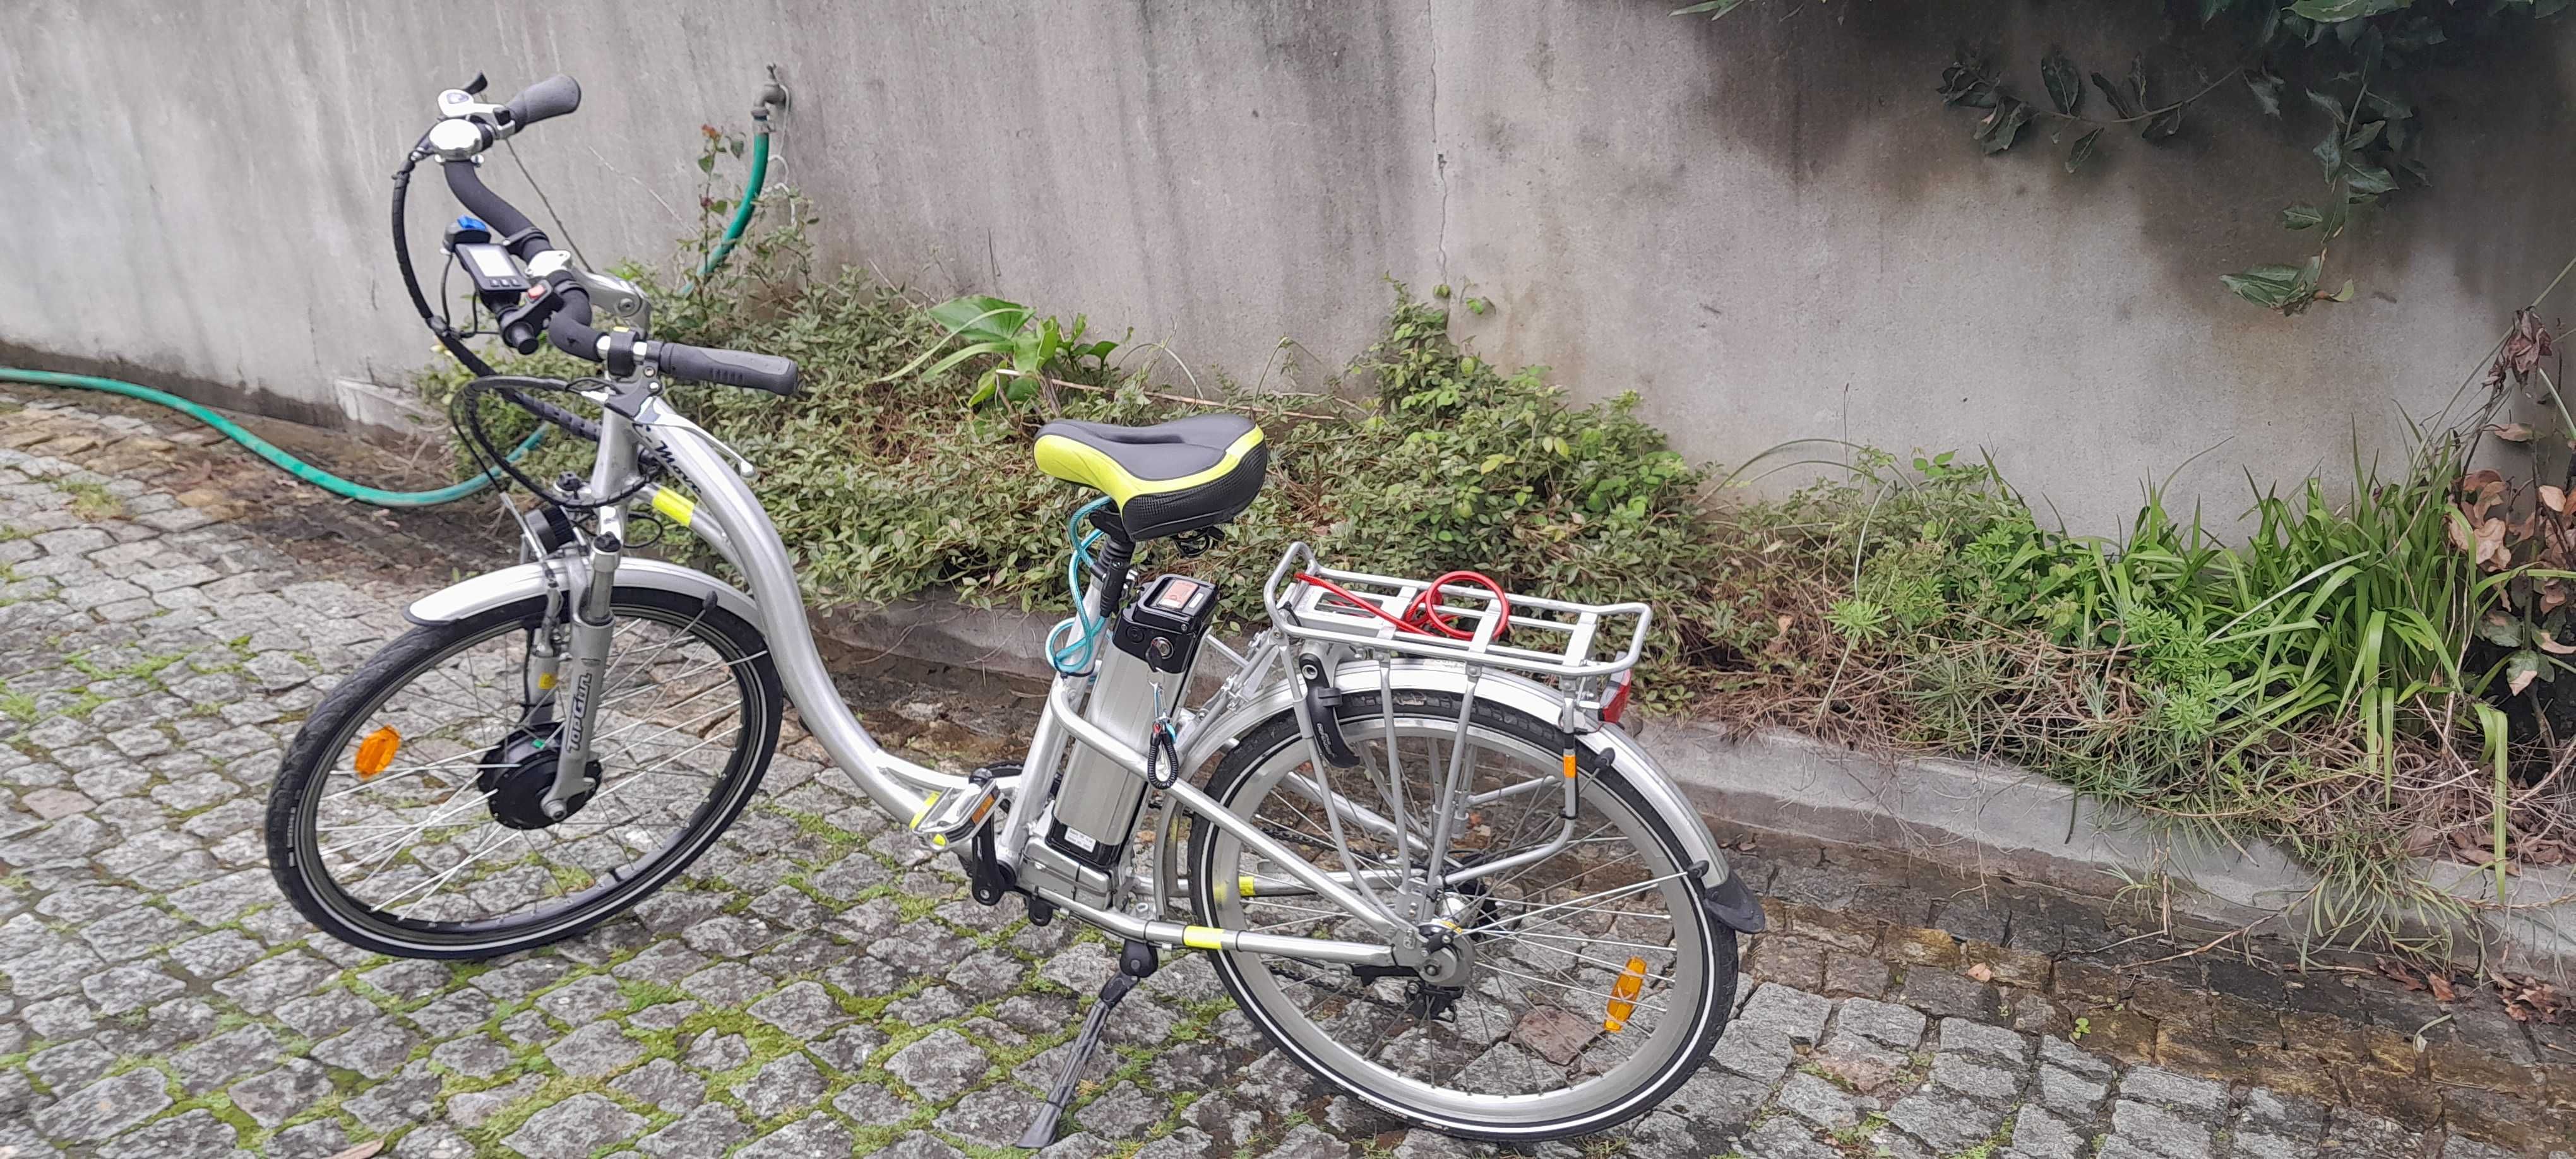 Bicicleta elétrica usada como nova